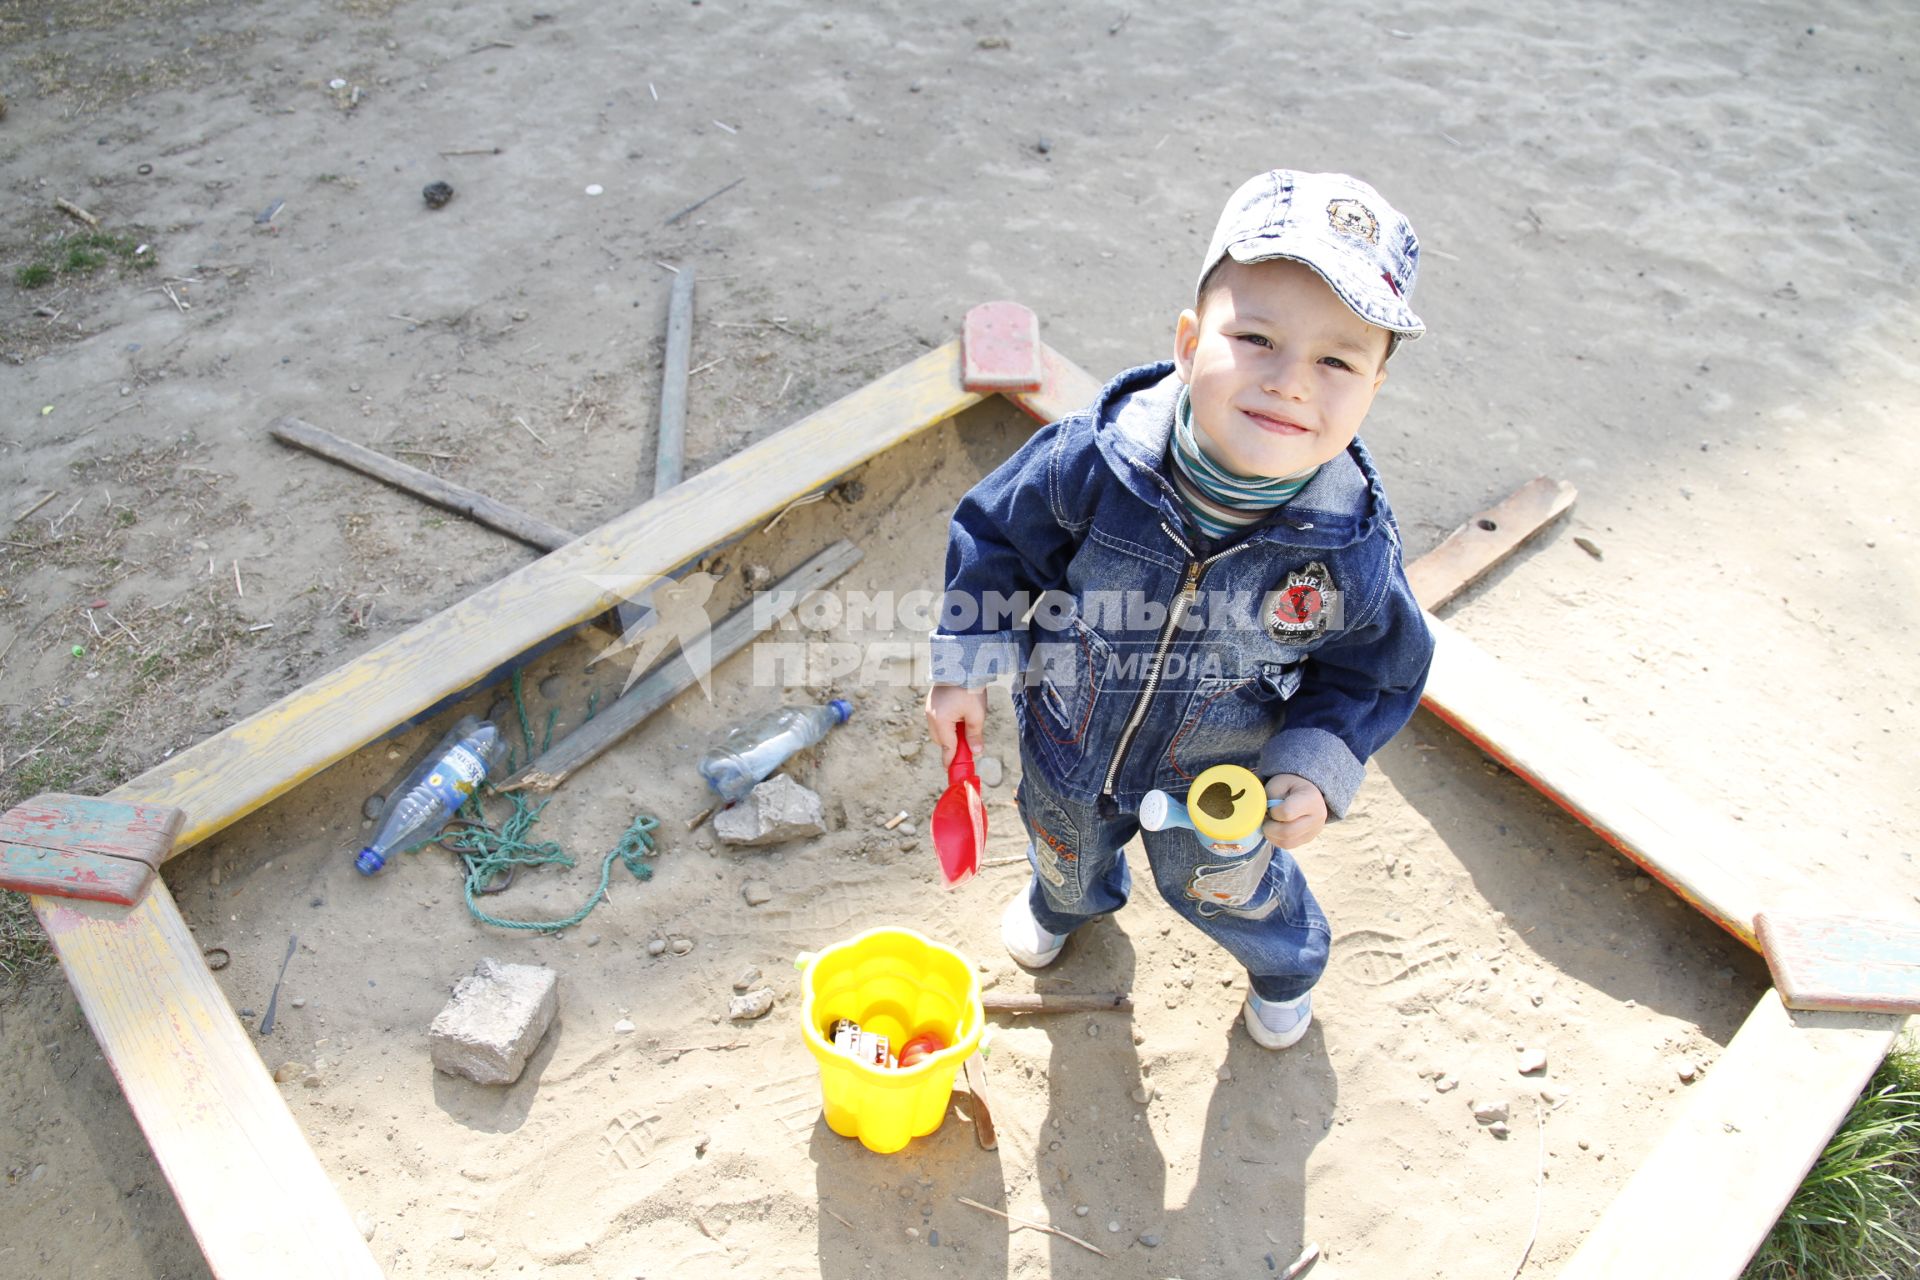 Ребенок на детской площадке играет в песочнице.